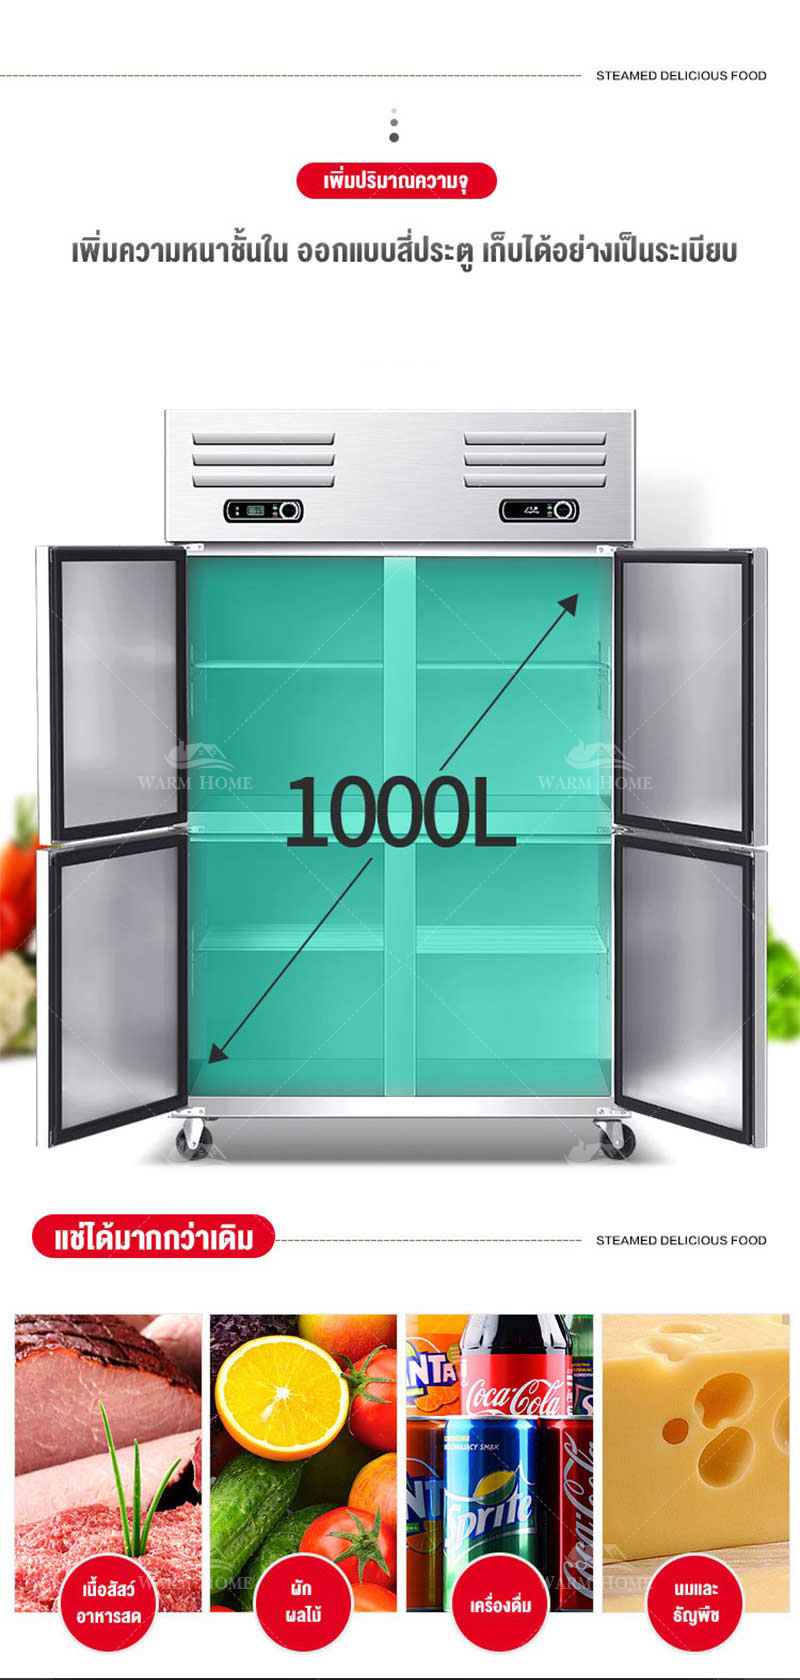 ตู้แช่ ตู้เย็นขนาดใหญ่ ตู้แช่เย็น ตู้แช่เครื่องดื่ม ตู้แช่แข็ง ขนาดใหญ่ 4 ประตู COOL Freeze ประหยัดพลังงาน ทำความเย็นเสียงเงียบ